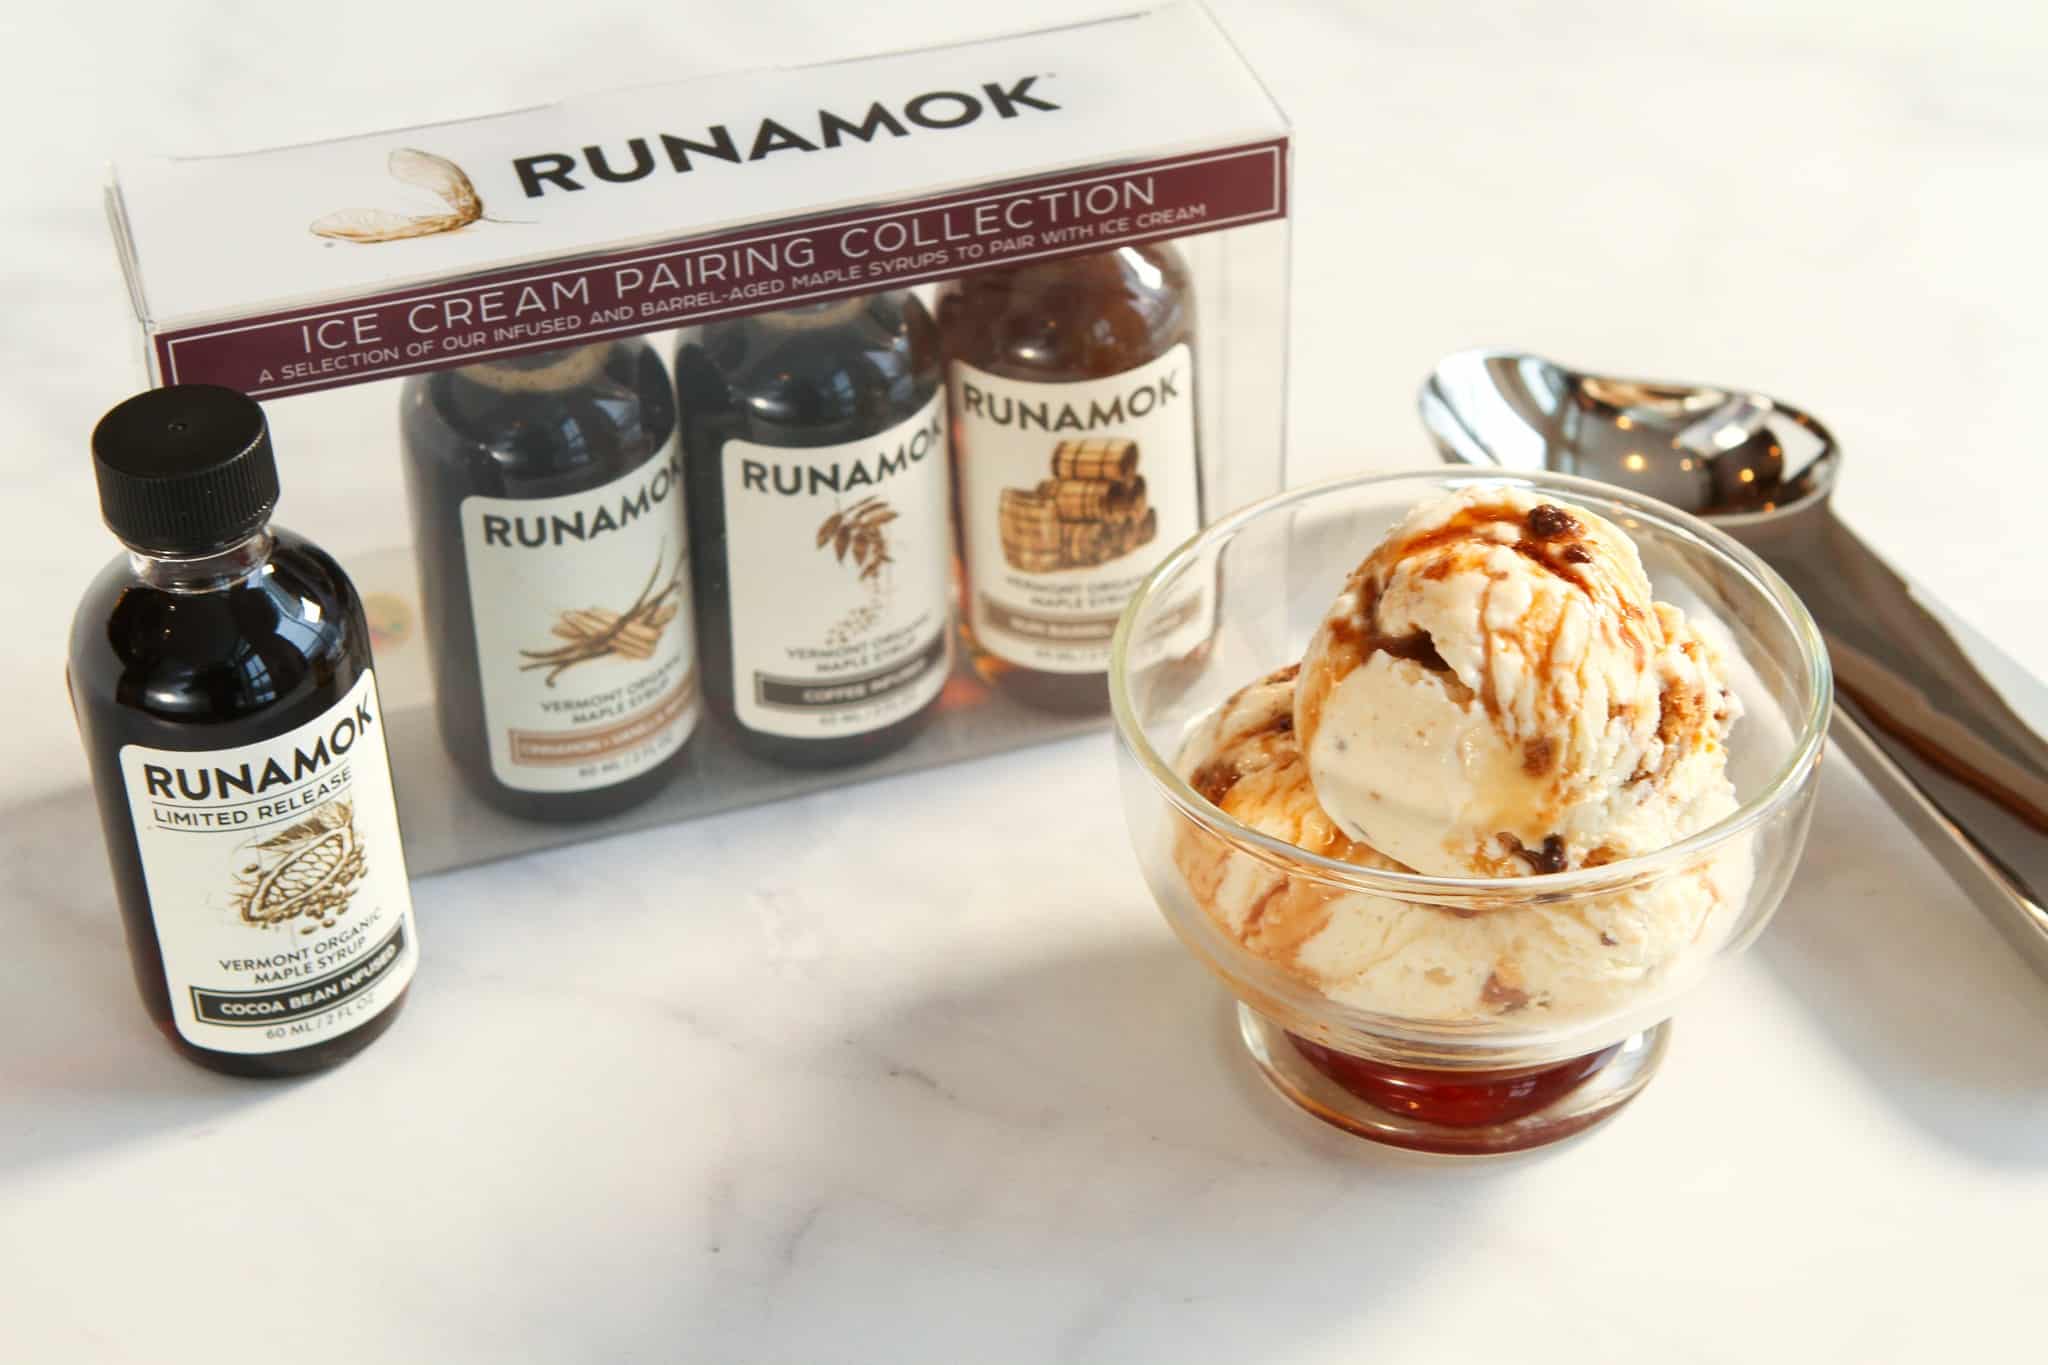 Runamok Maple - Ice Cream Pairing Syrup